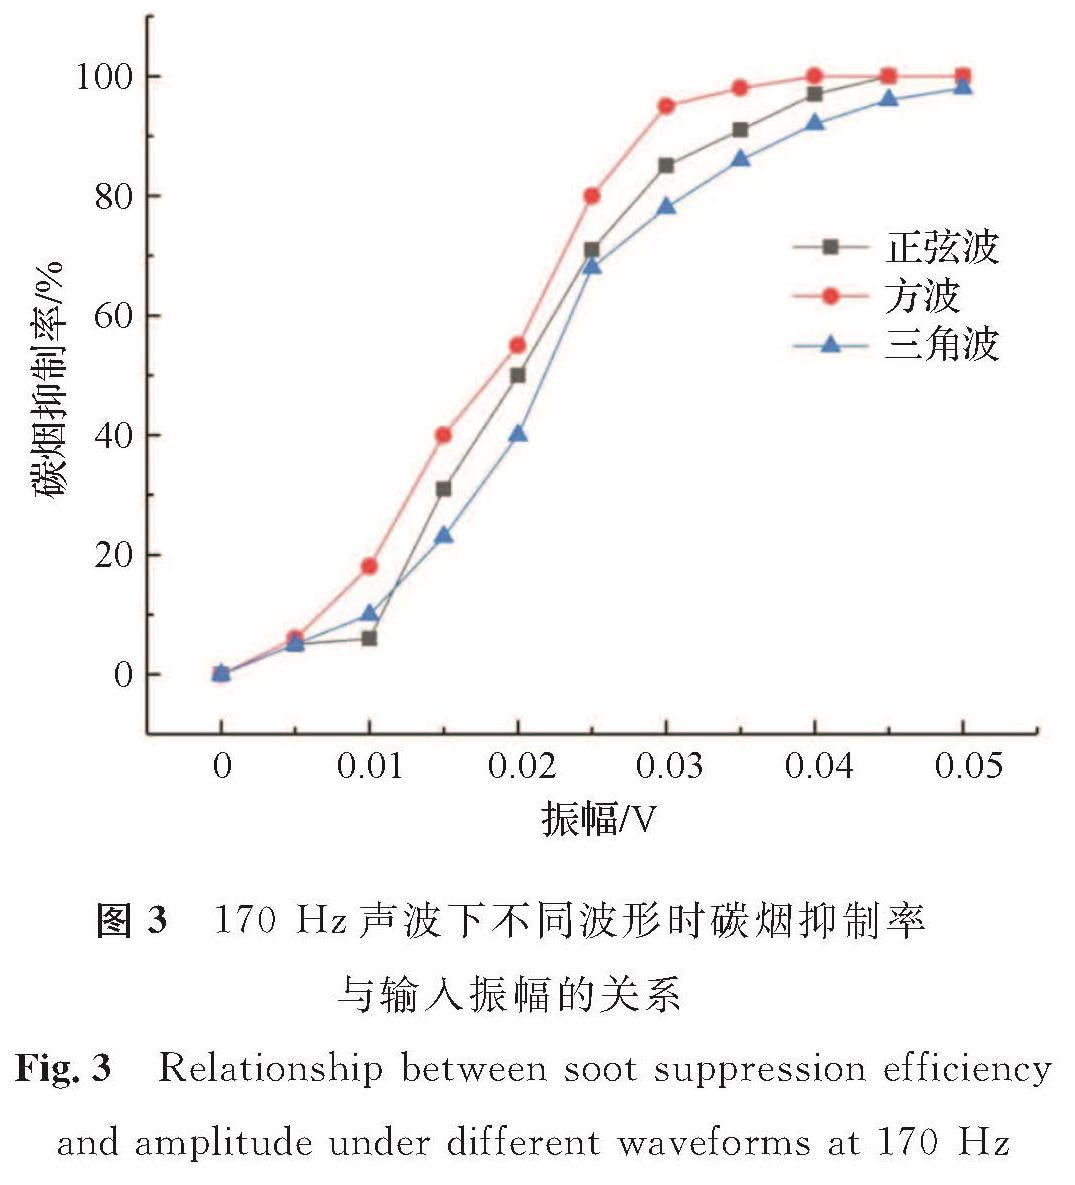 图3 170Hz声波下不同波形时碳烟抑制率与输入振幅的关系<br/>Fig.3 Relationship between soot suppression efficiency and amplitude under different waveforms at 170 Hz